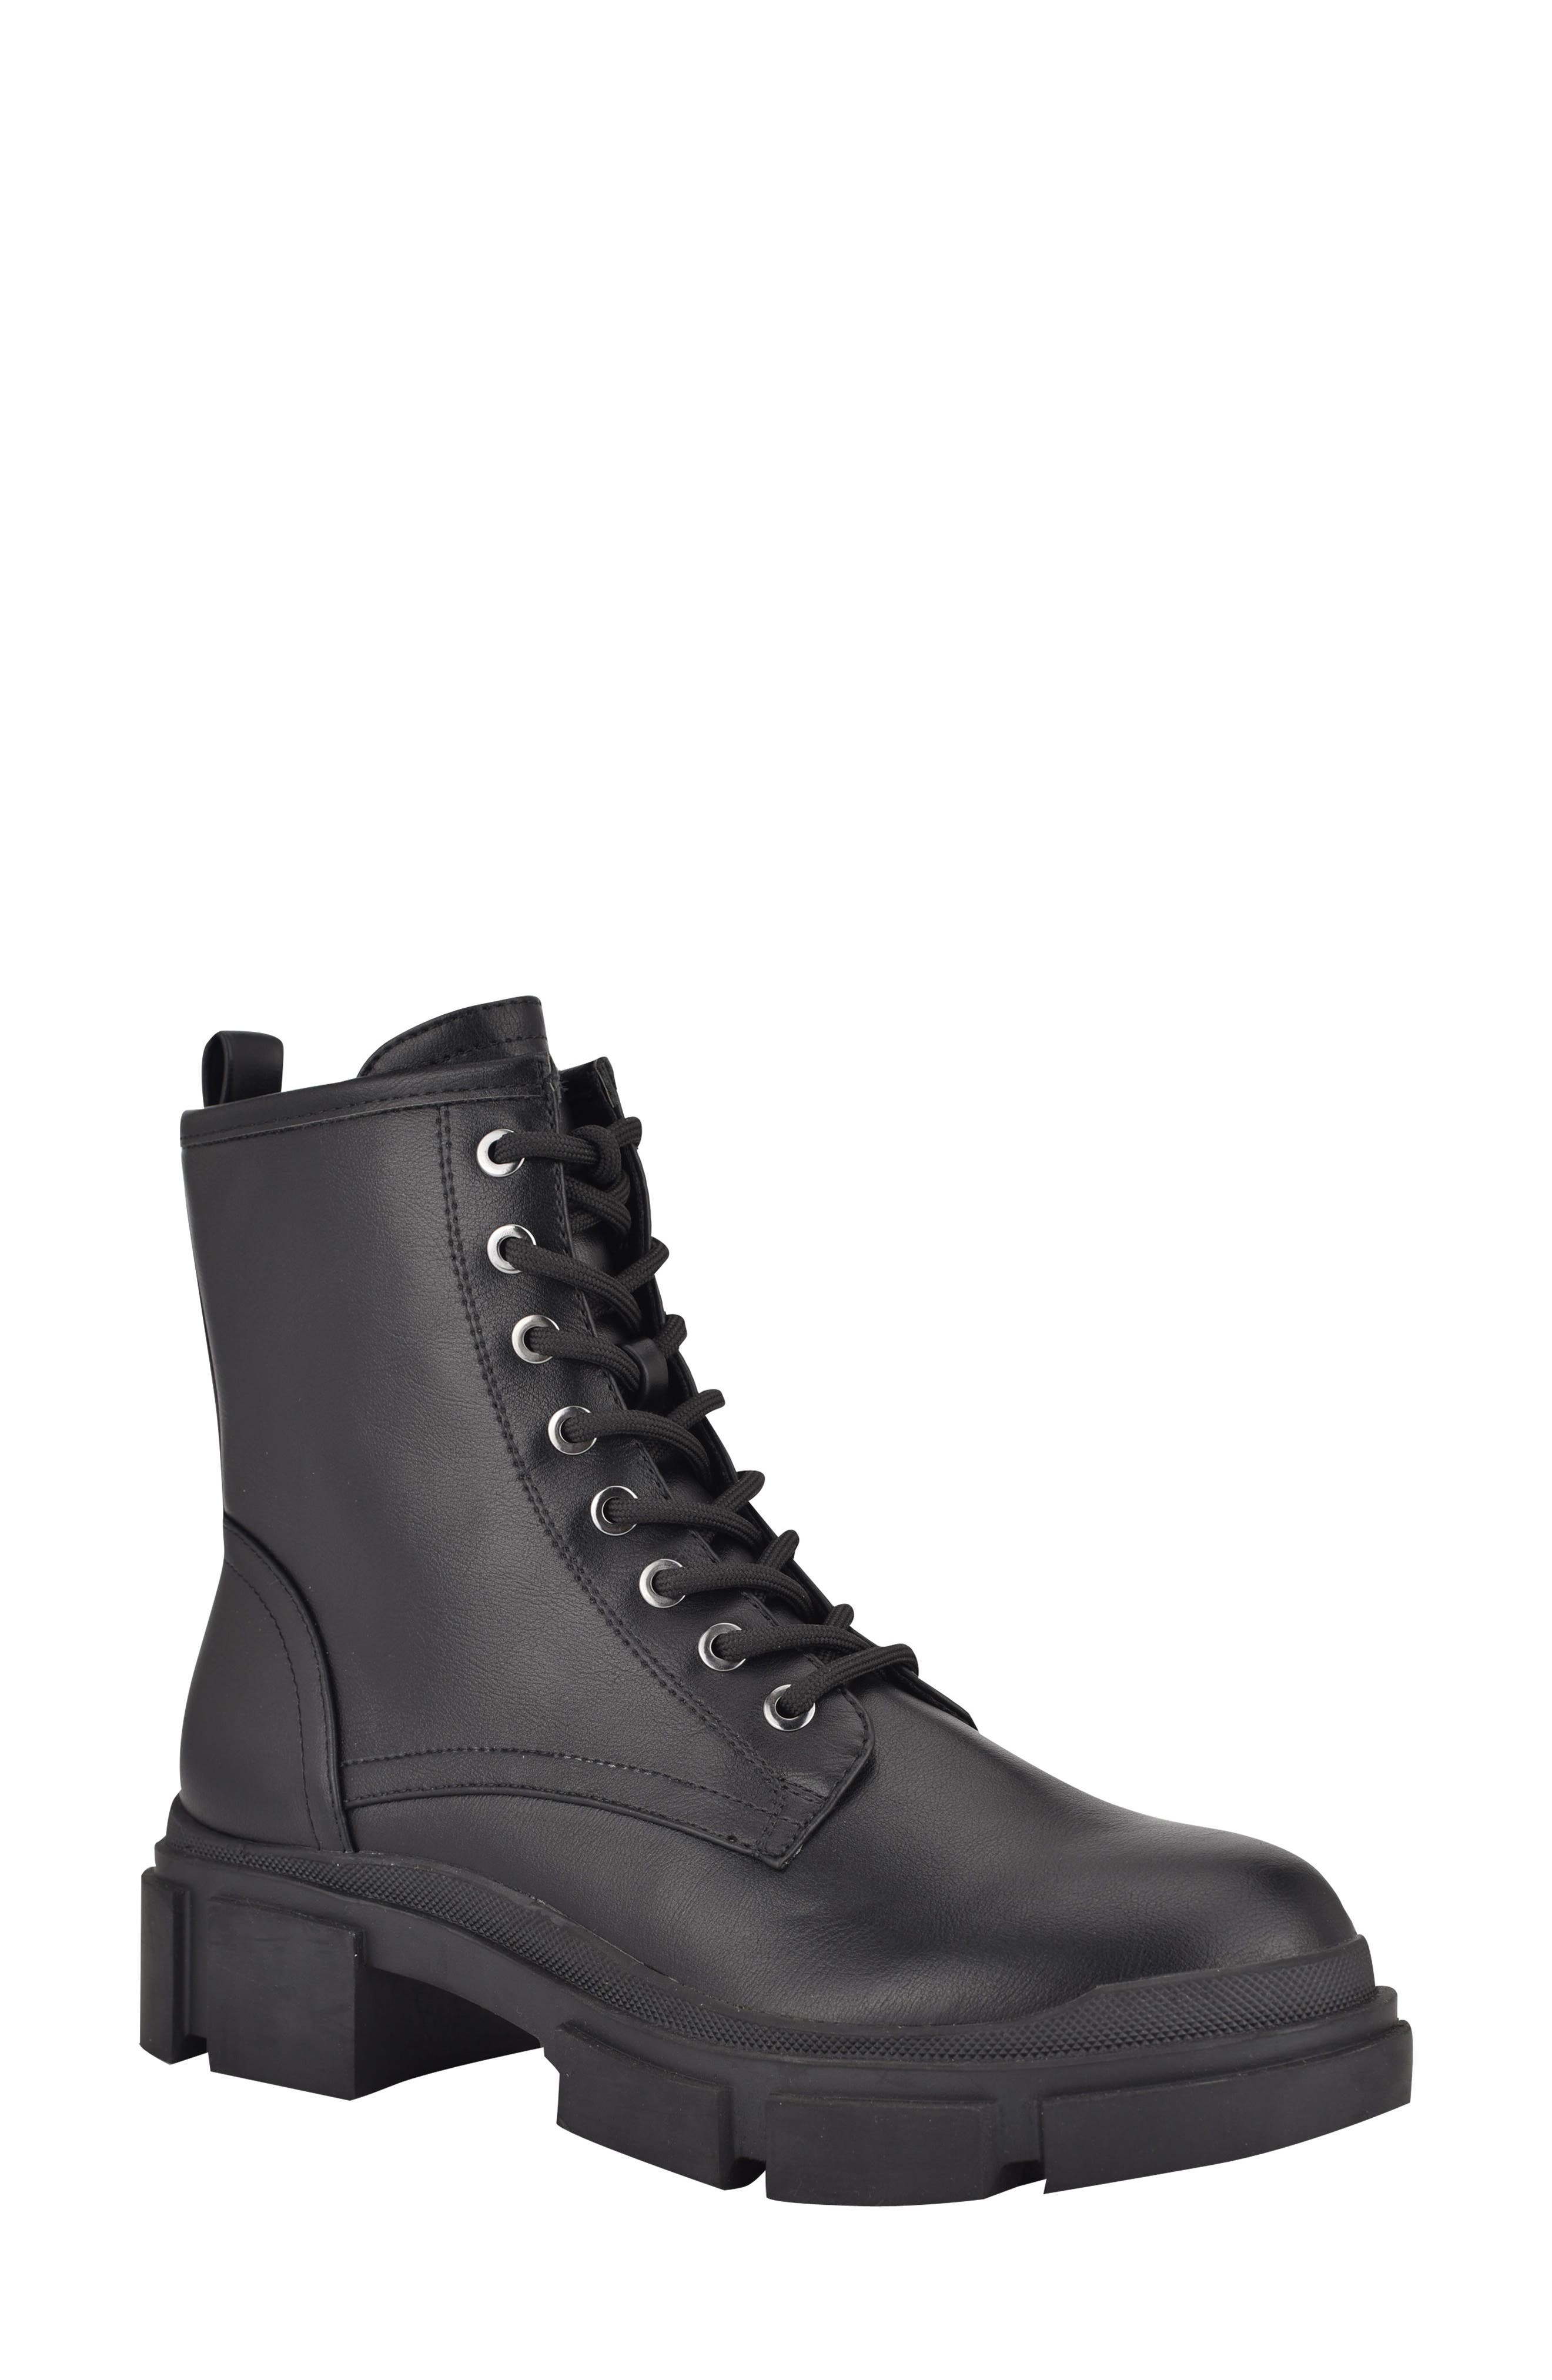 nine west combat boots